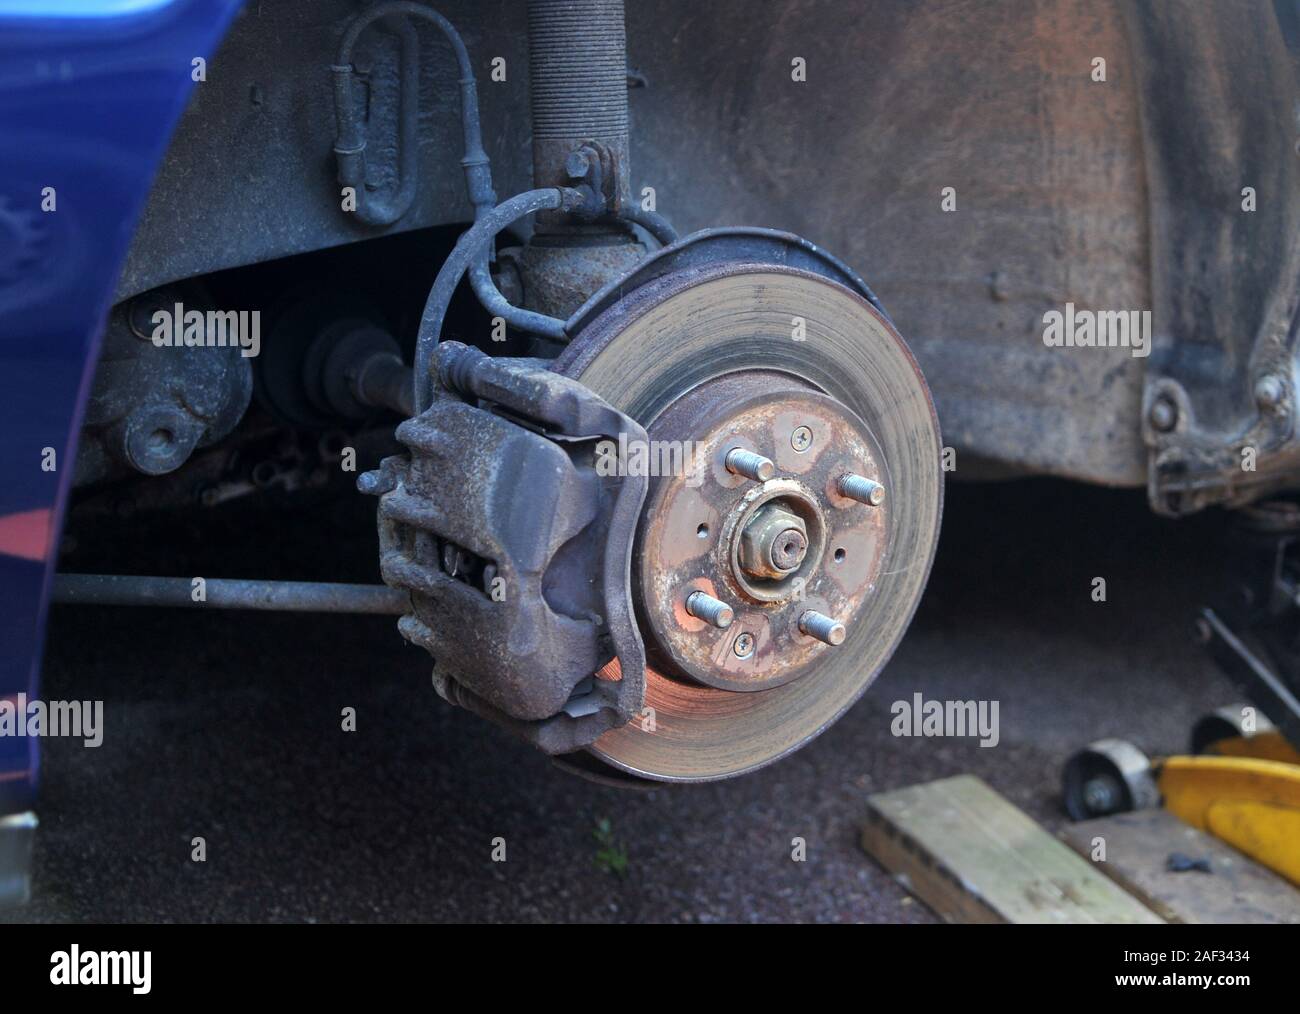 Auto Bremsscheiben und Bremsbeläge Stockfotografie - Alamy